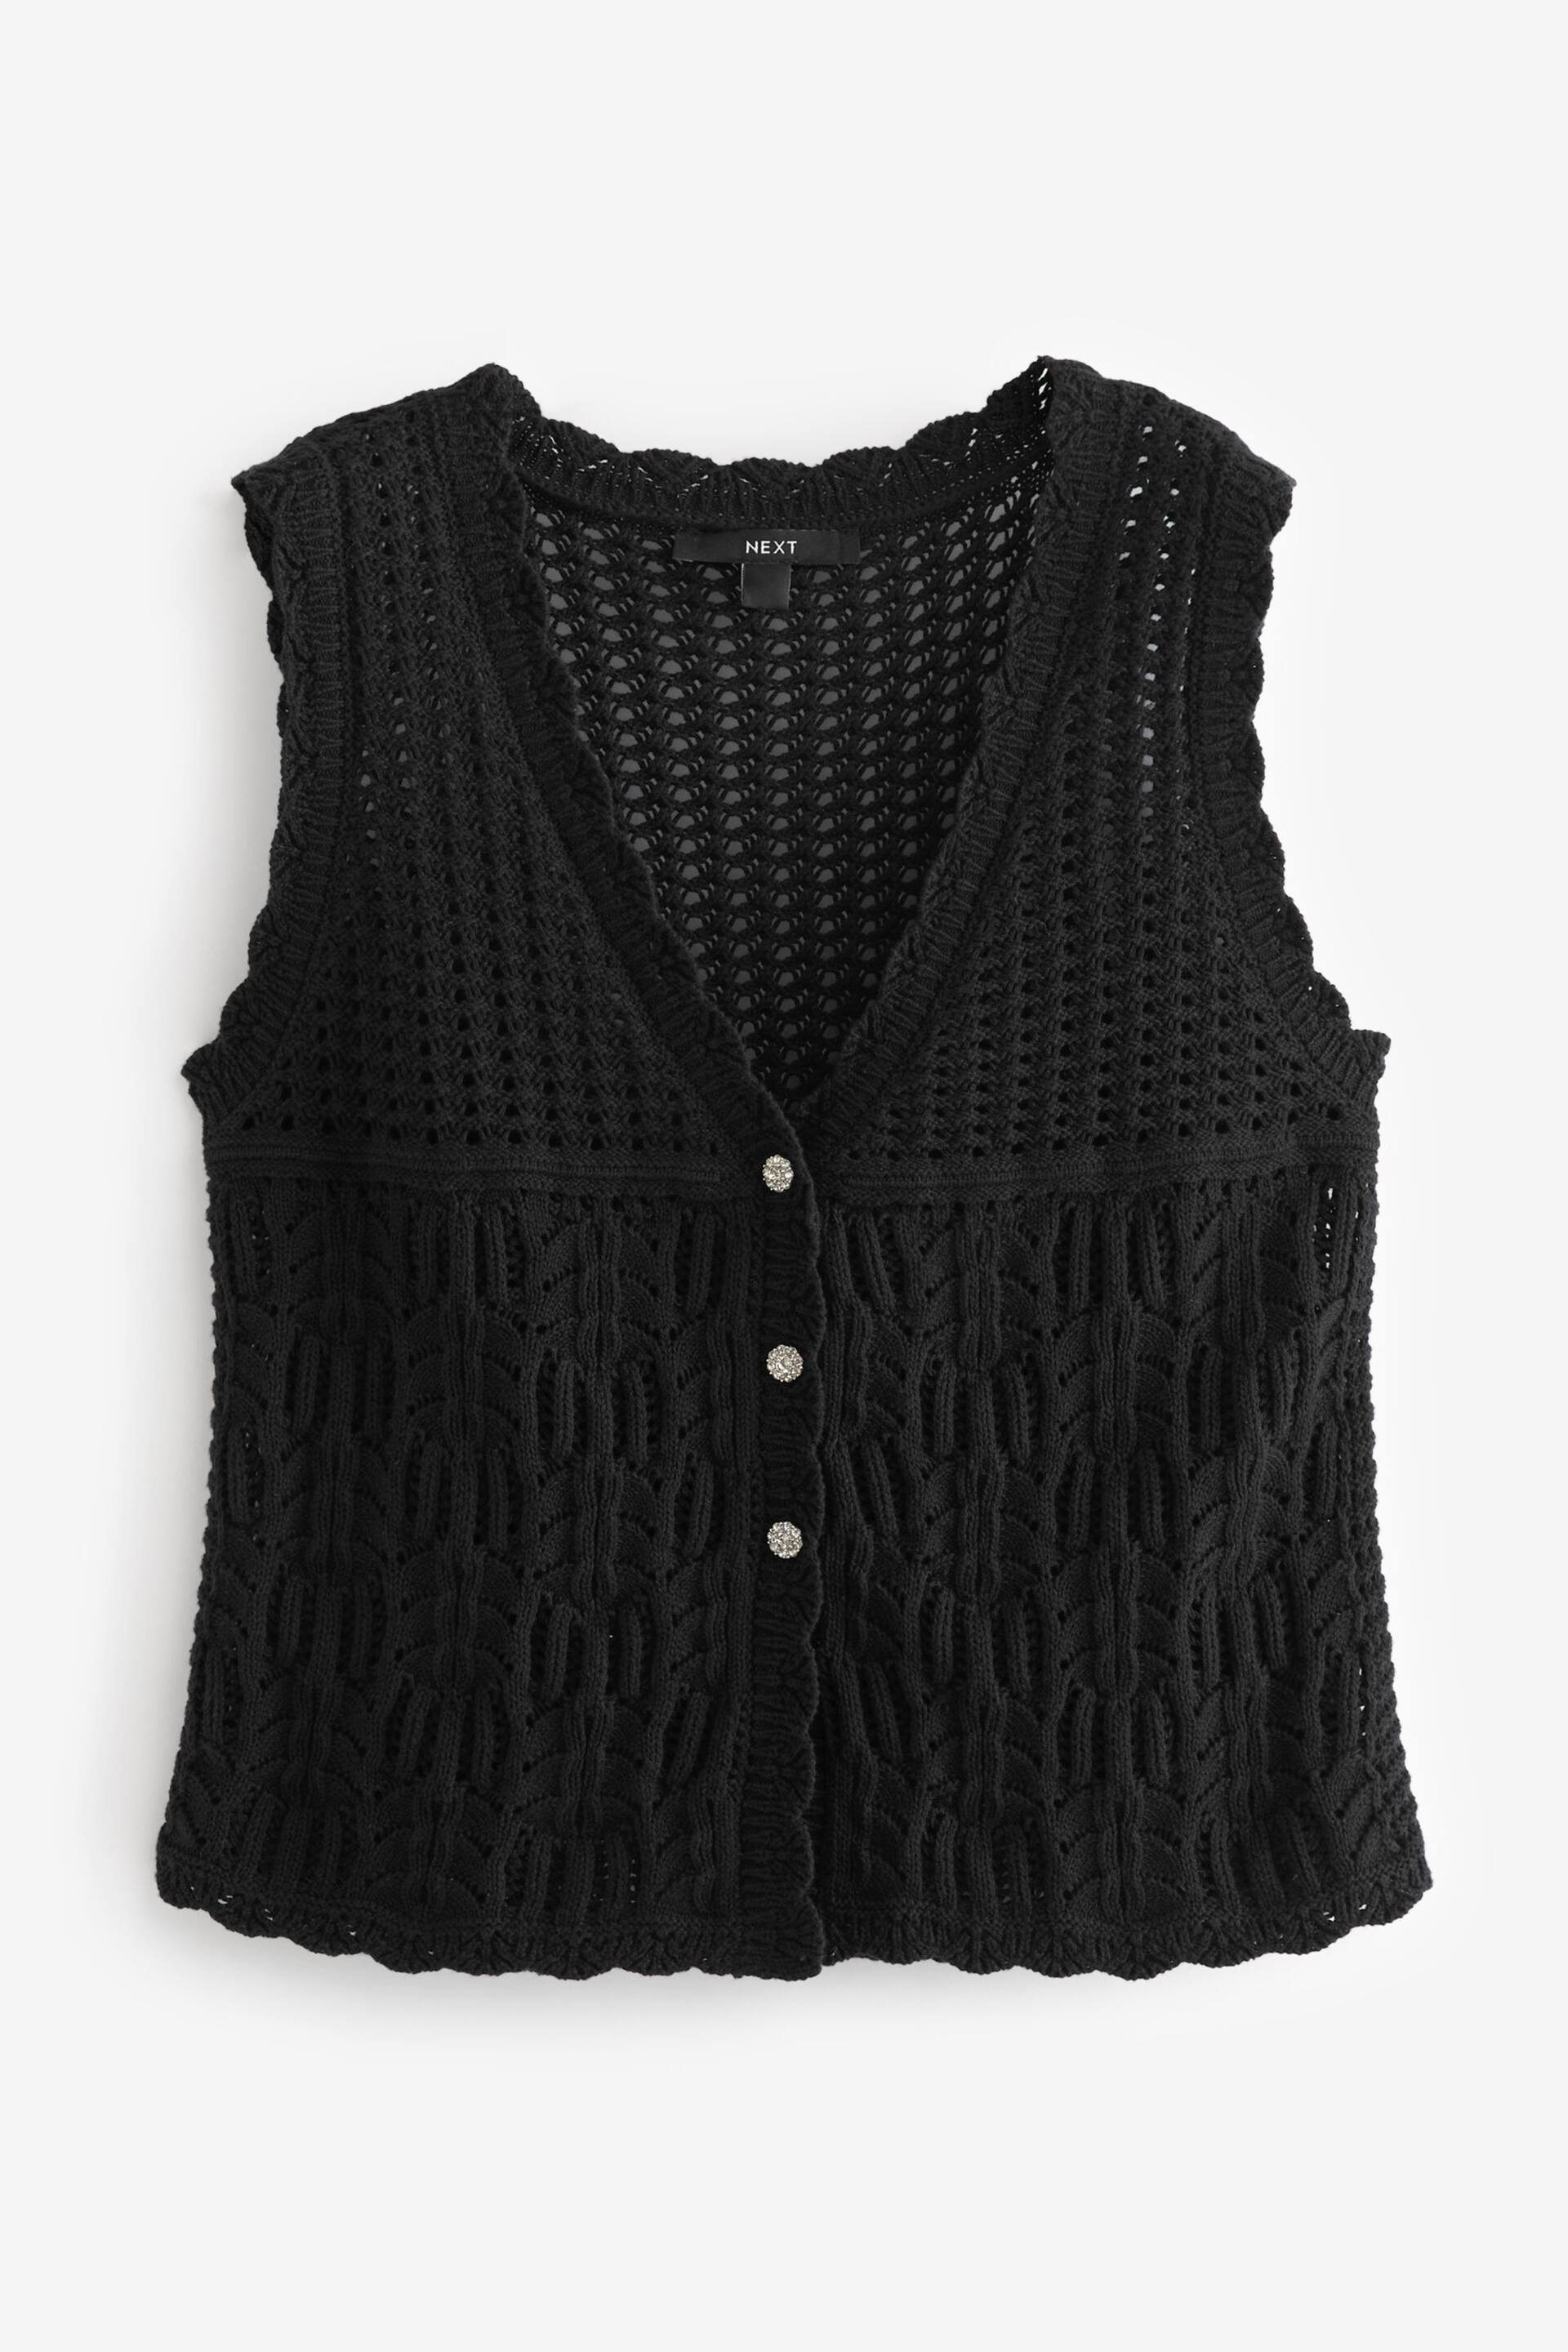 Black Crochet Gem Button Vest - Image 6 of 7